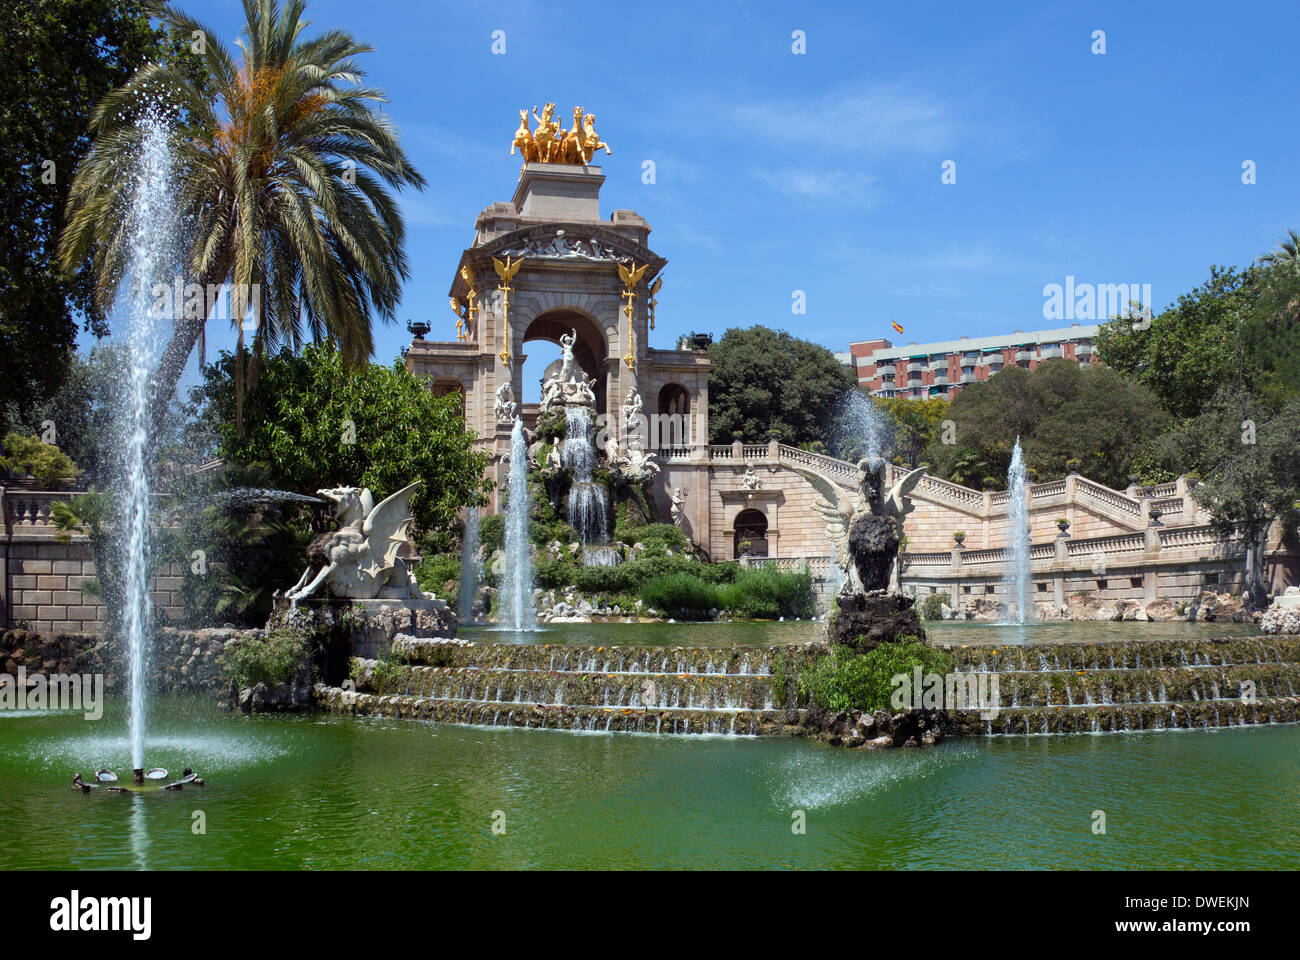 Fontaines ornementales dans le Parc de la Ciutadella, dans le quartier de la vieille ville de Barcelone, dans la région de Catalogne en Espagne. Banque D'Images